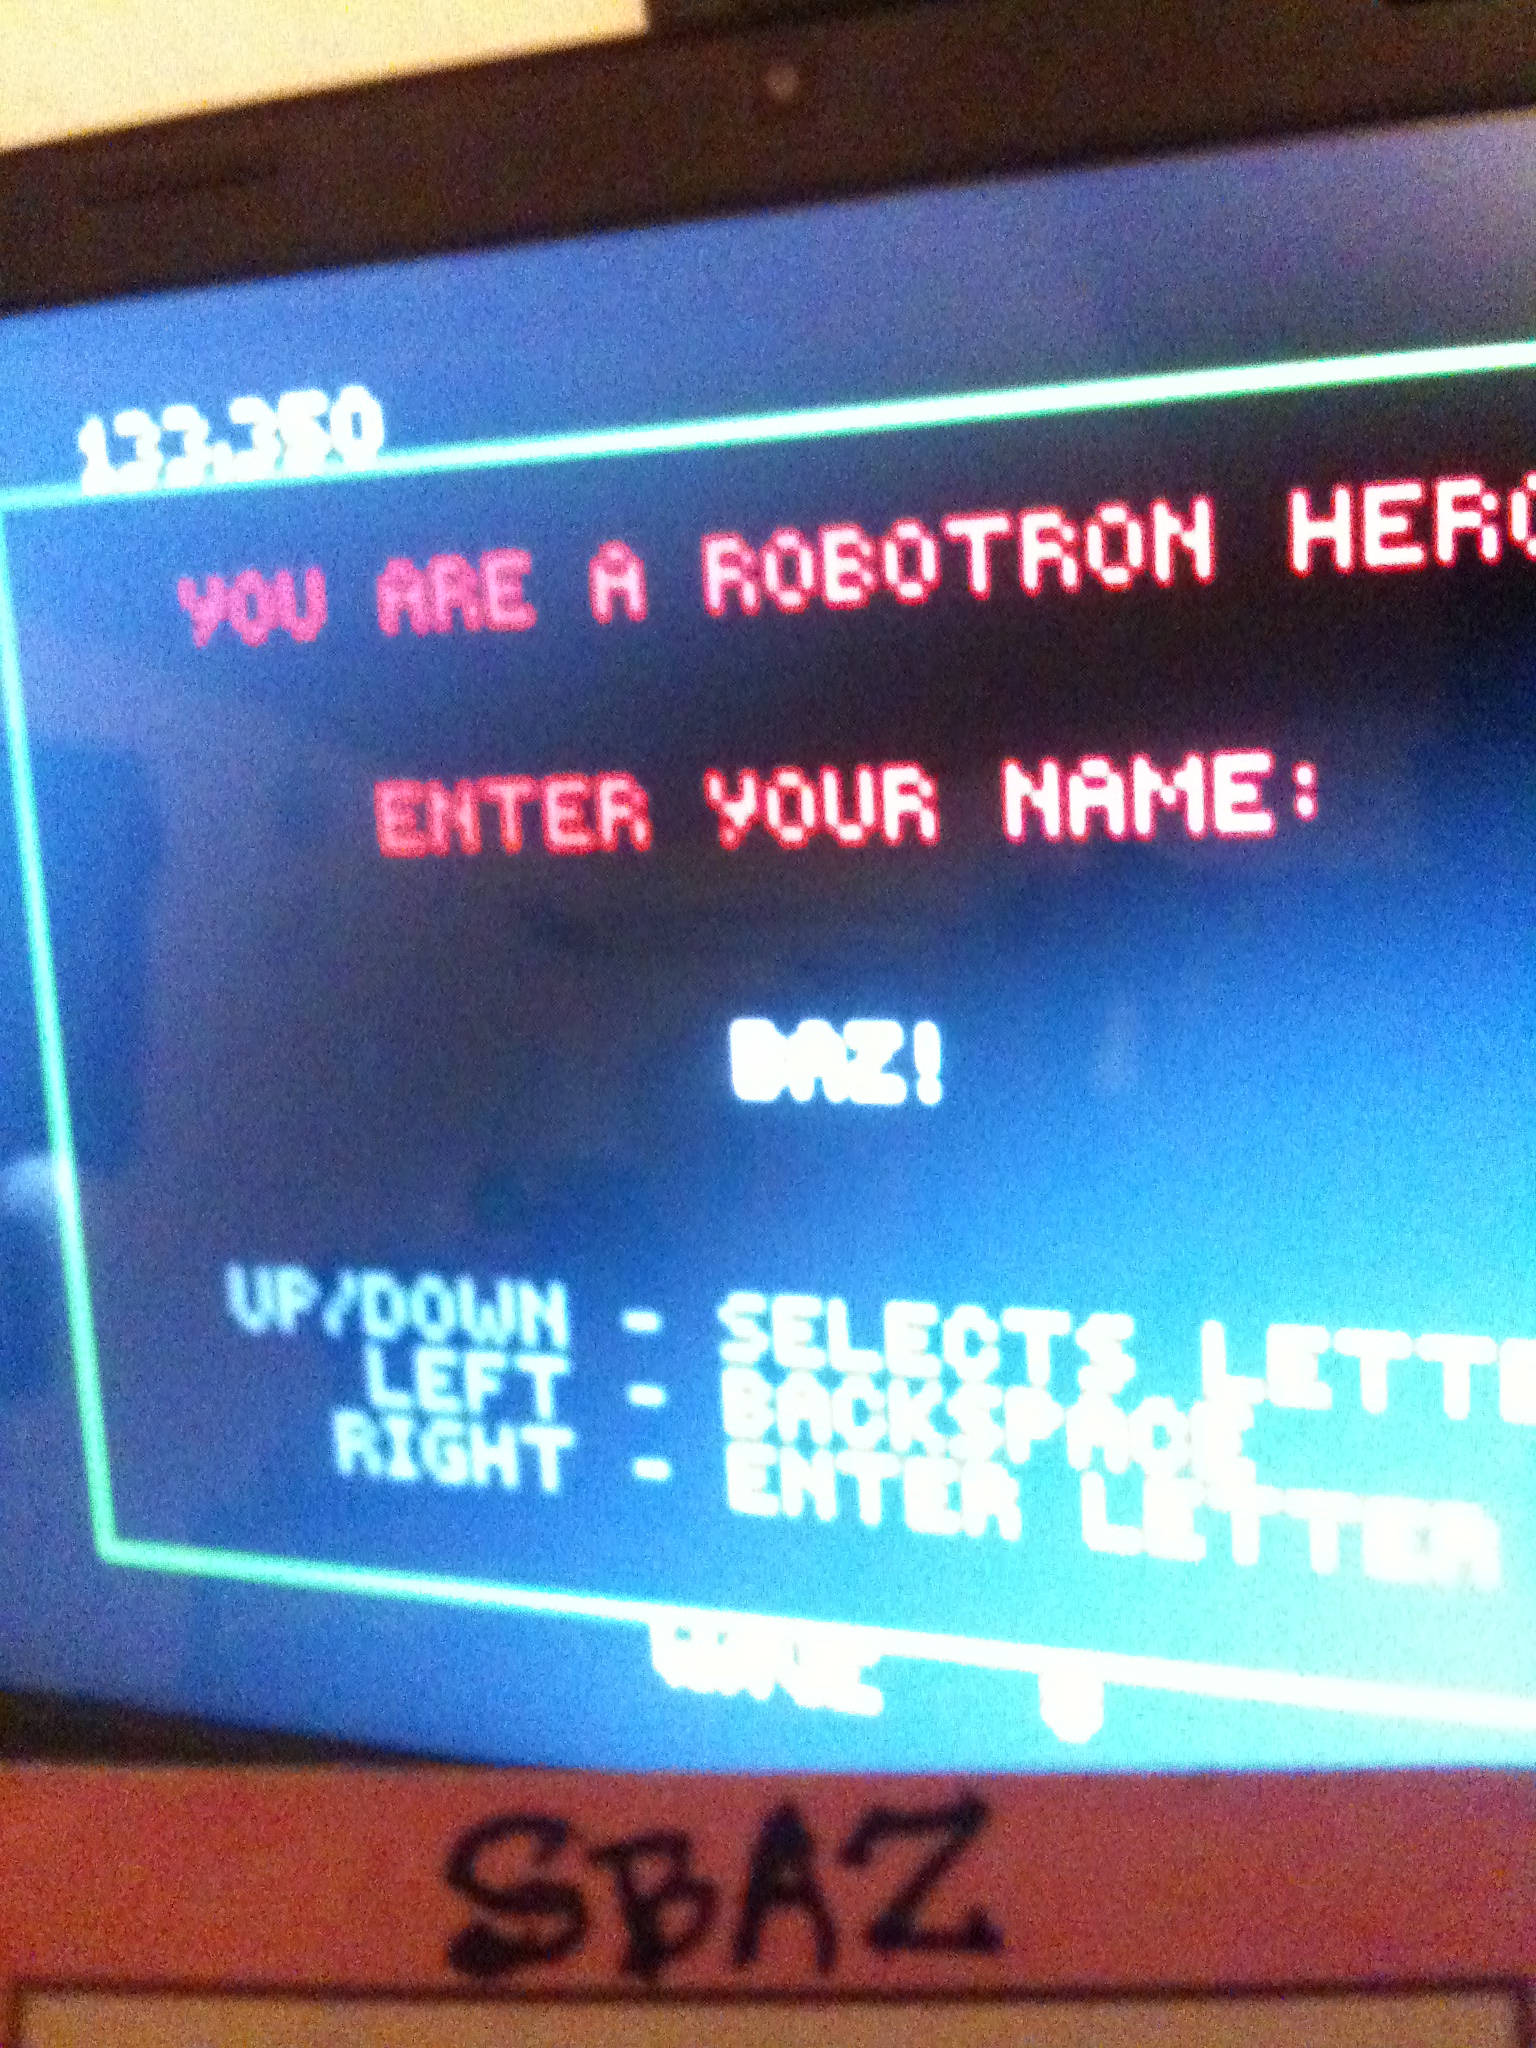 Robotron 2084 133,350 points